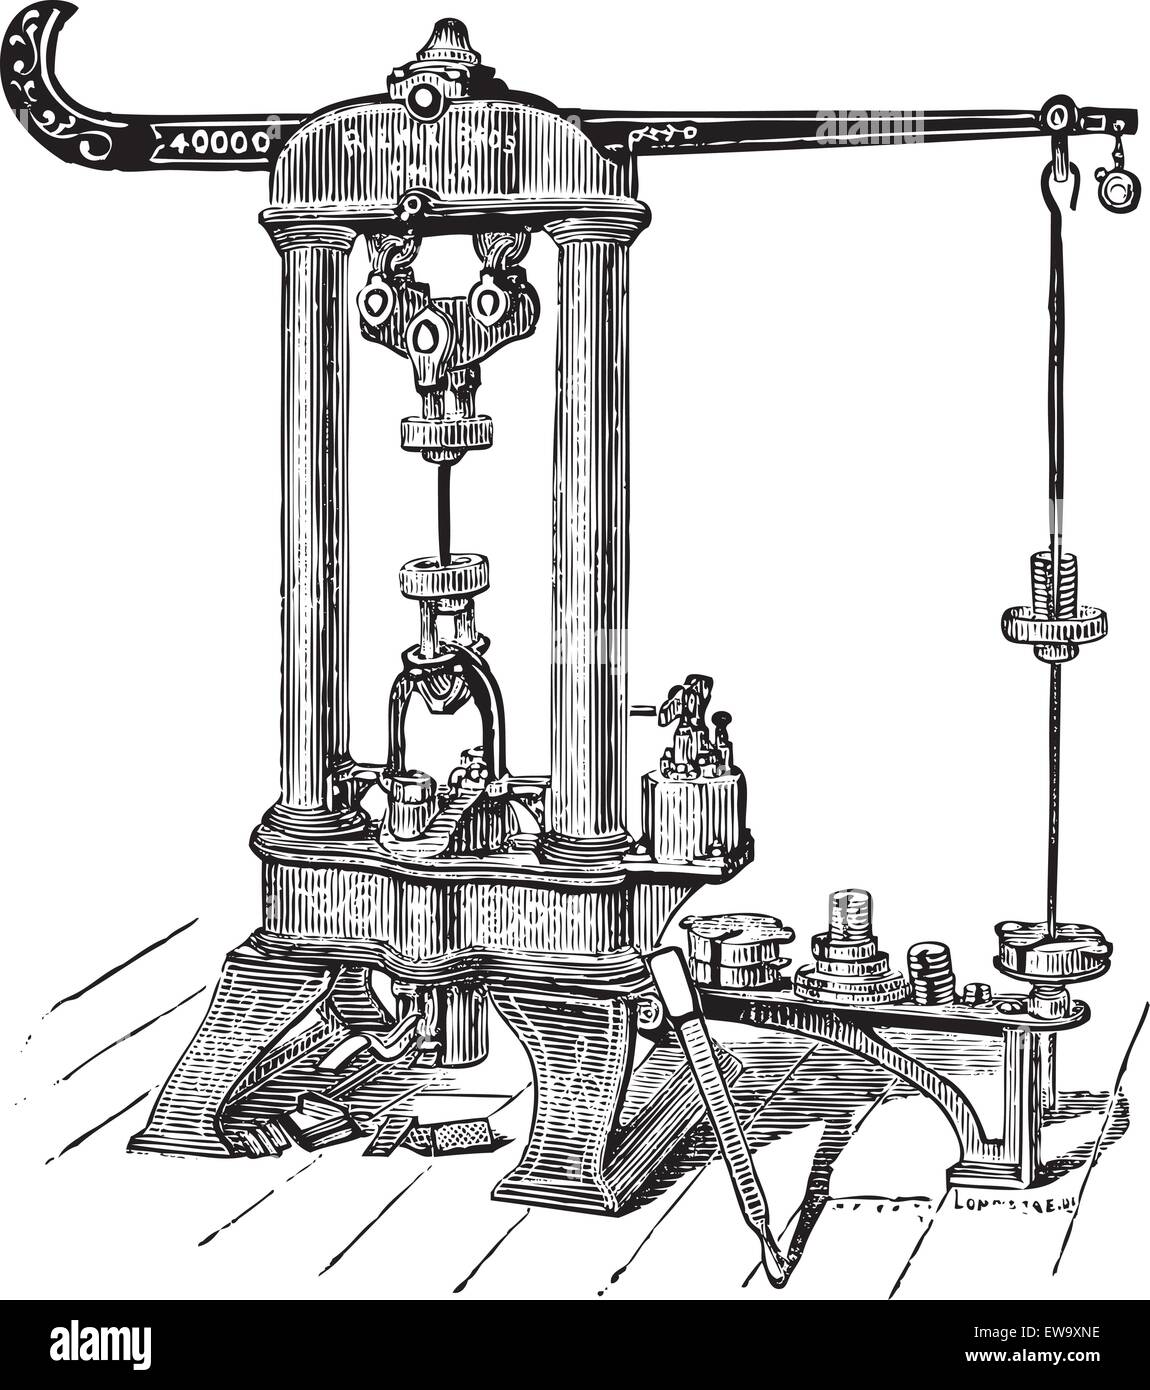 Cette machine d'essai Riehle a été fabriquée par Riehle Brothers, de Philadelphie. Ce type de machine a été utilisé pour évaluer un tapis Illustration de Vecteur